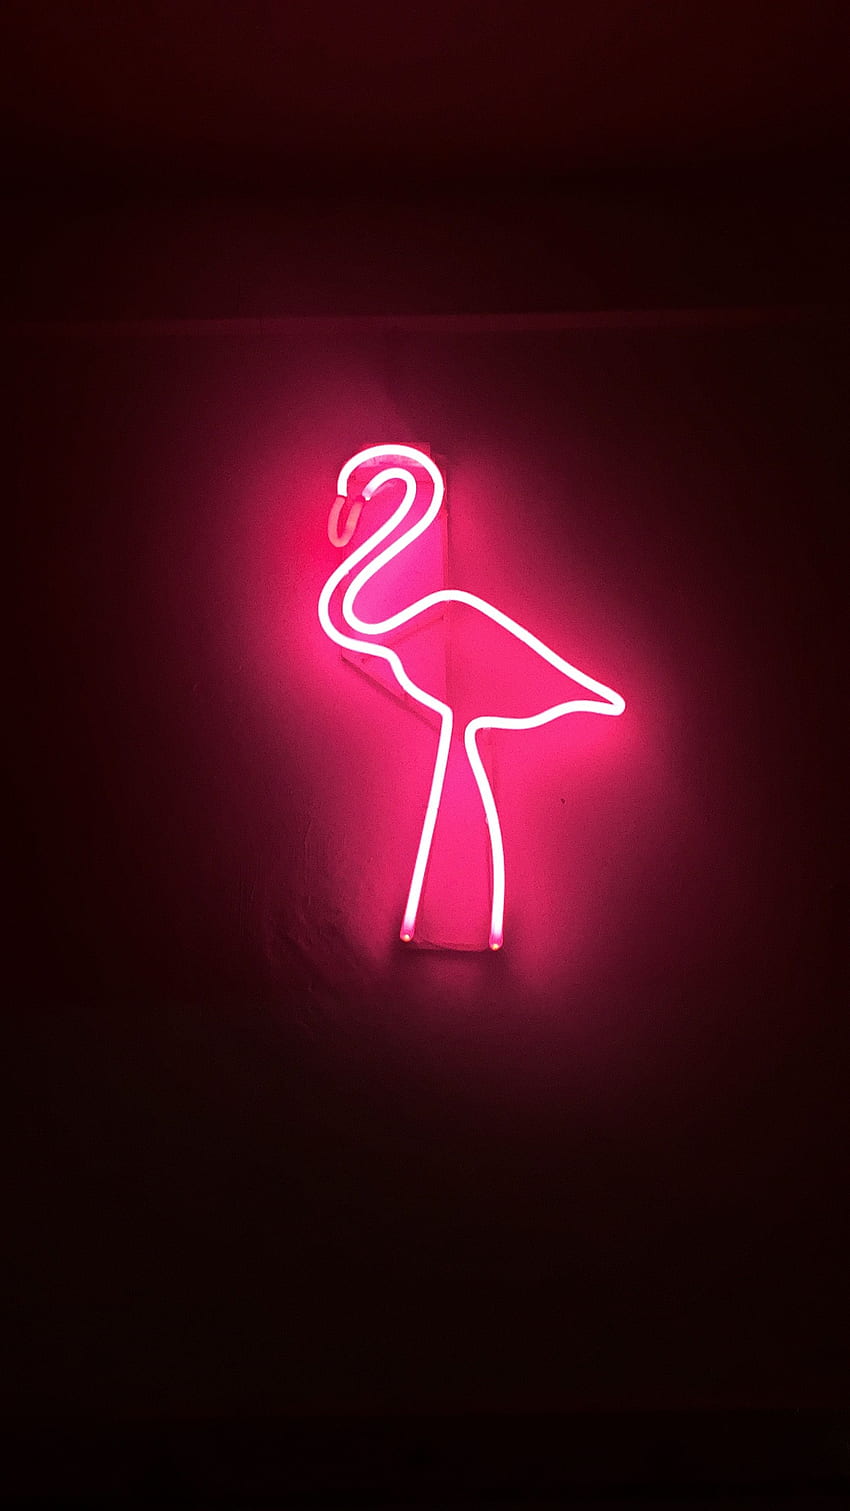 Flamingo. Tujuan. Kunci layar iphone, iPhone, latar belakang iPhone, Neon Pink Flamingo wallpaper ponsel HD